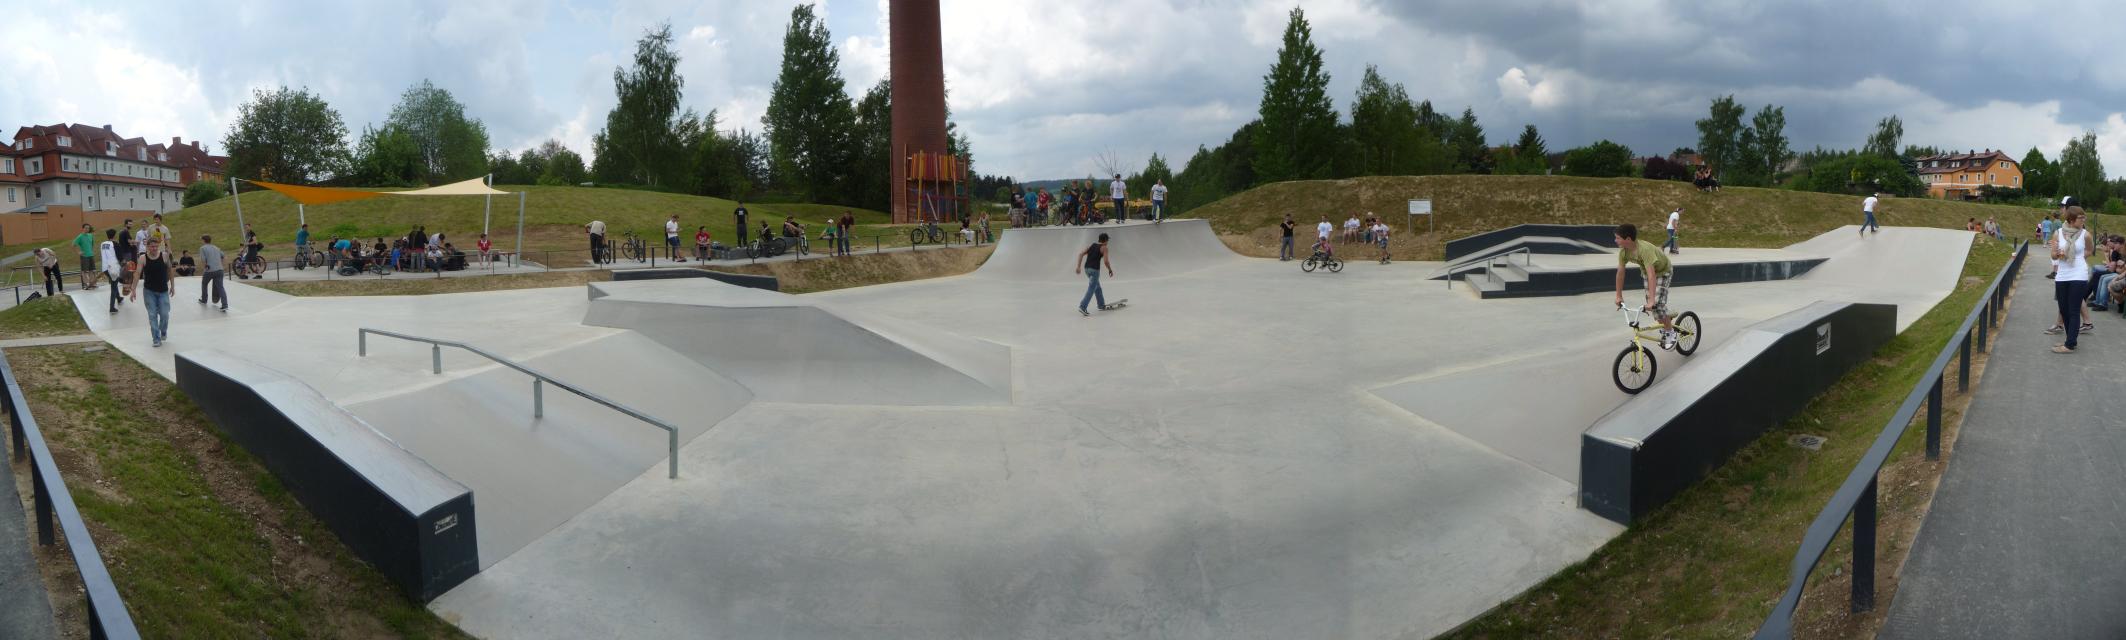 Der Freizeitpark an der Mitterteicher Straße ist für die ganze Familie ein Erlebnis: Skatepark, Kinderspielplätze, Salbeiwiese, Bodentrampolin und anderes mehr.  